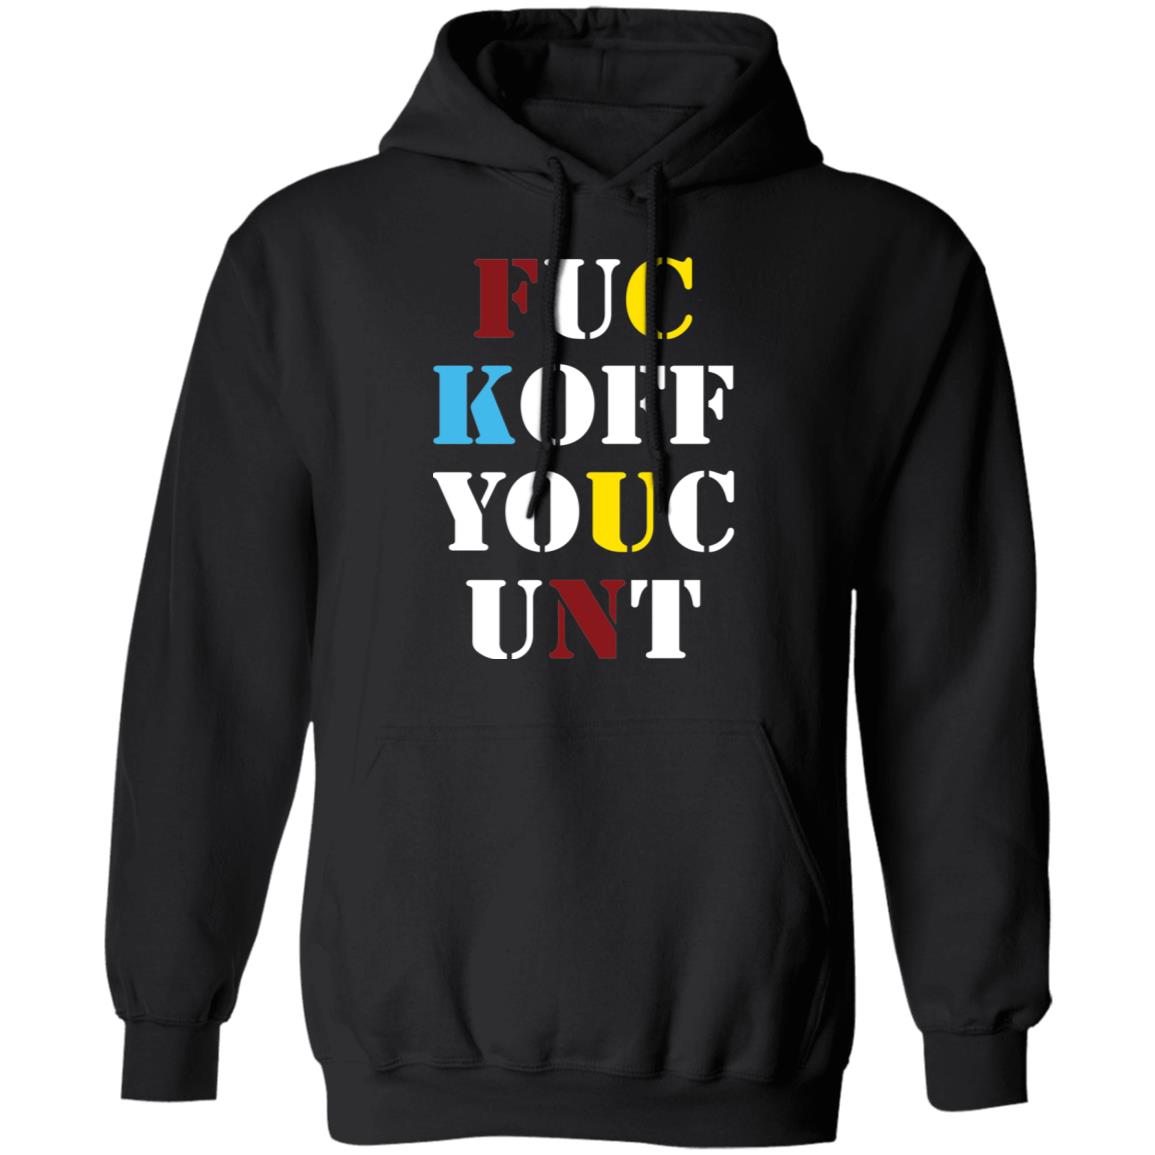 Fuc Koff Youc Unt Shirt 2